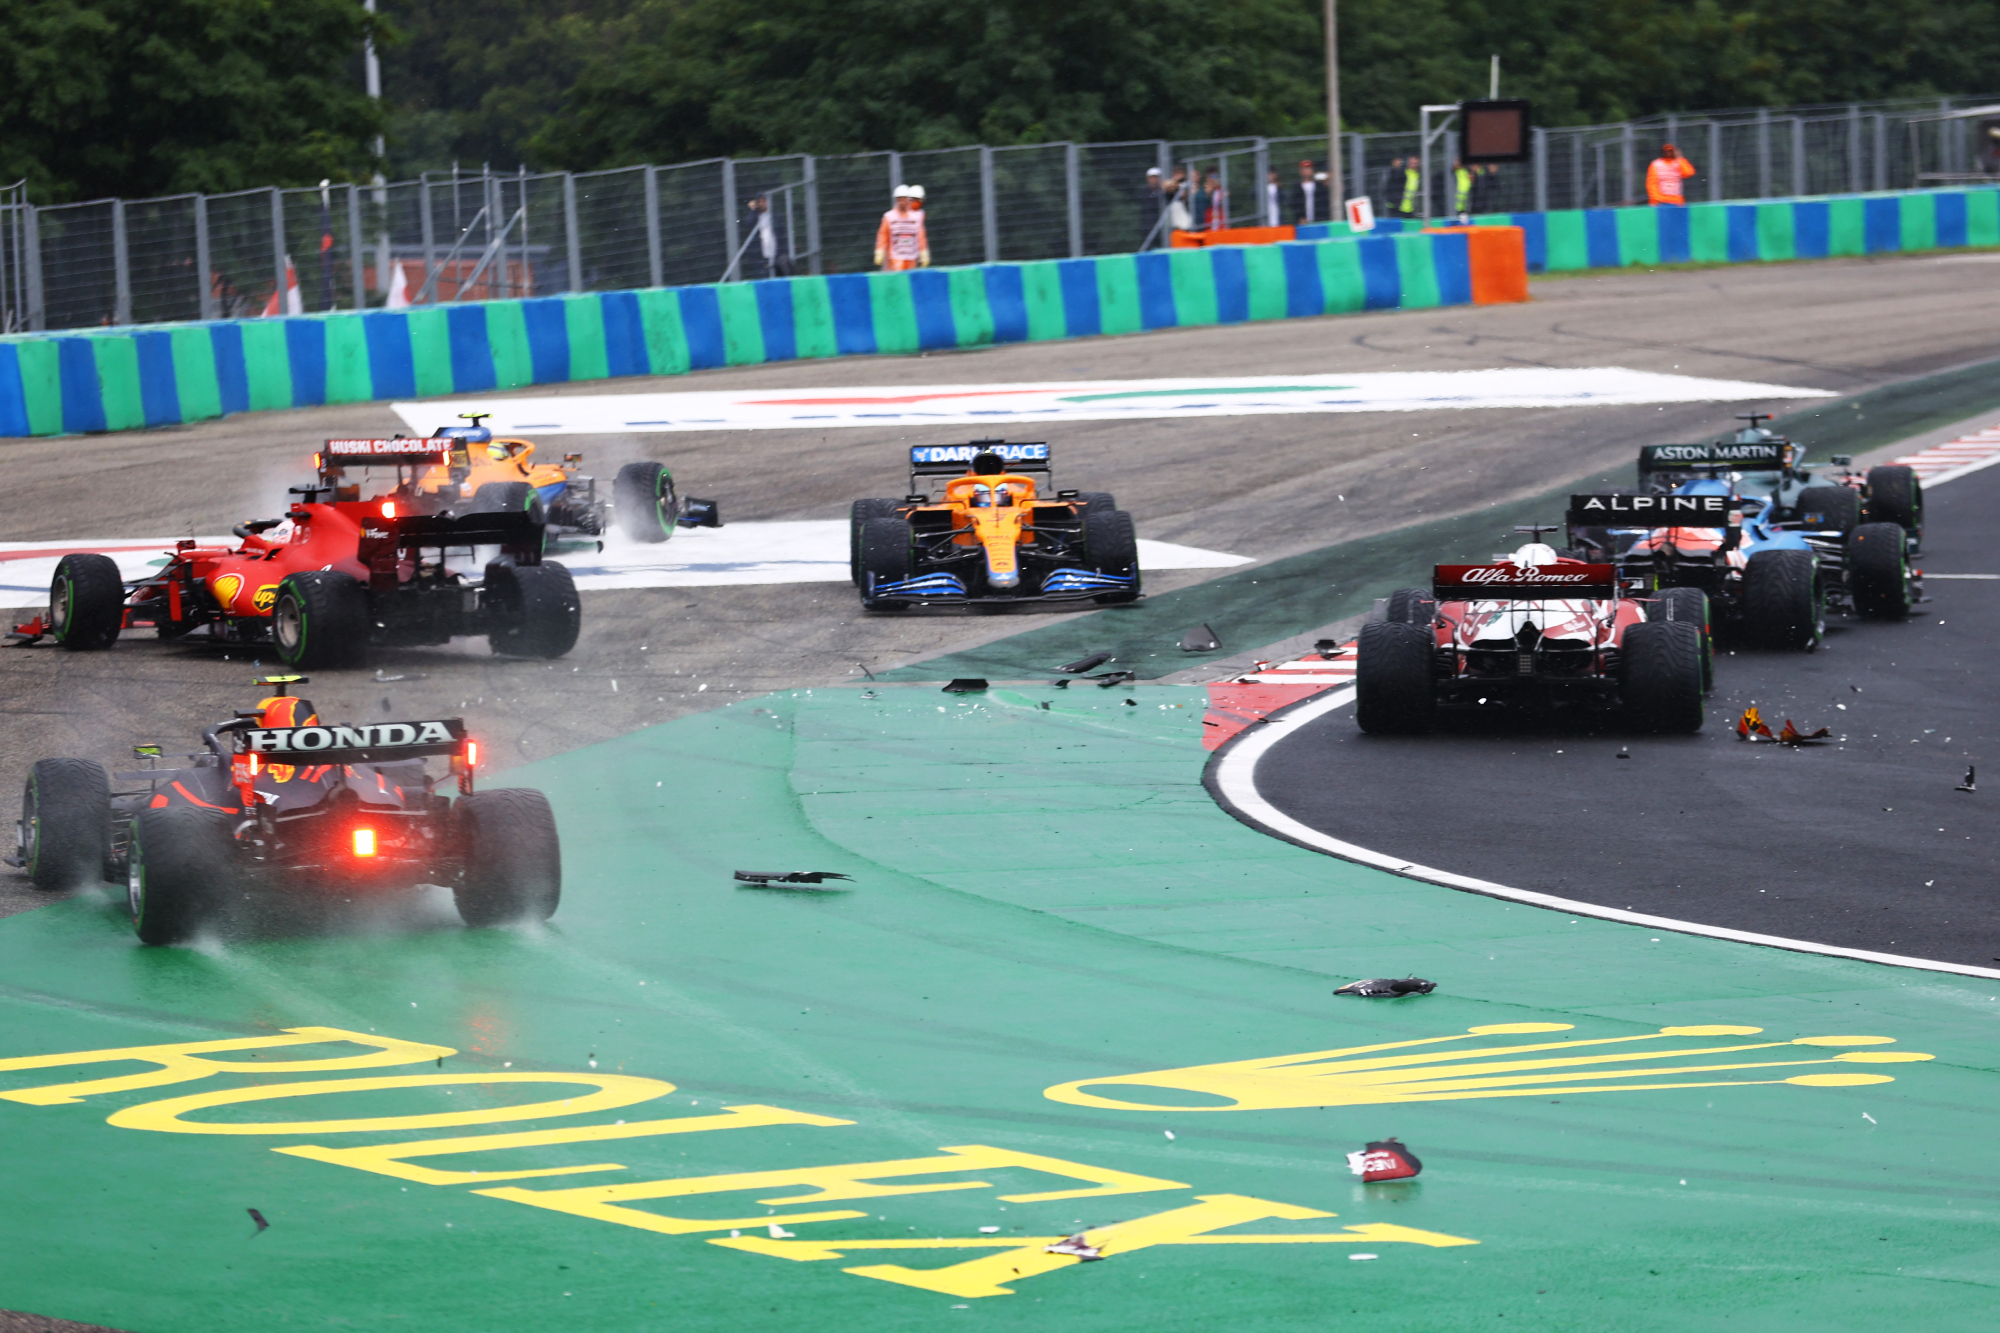 A crash at the most recent Formula 1 race